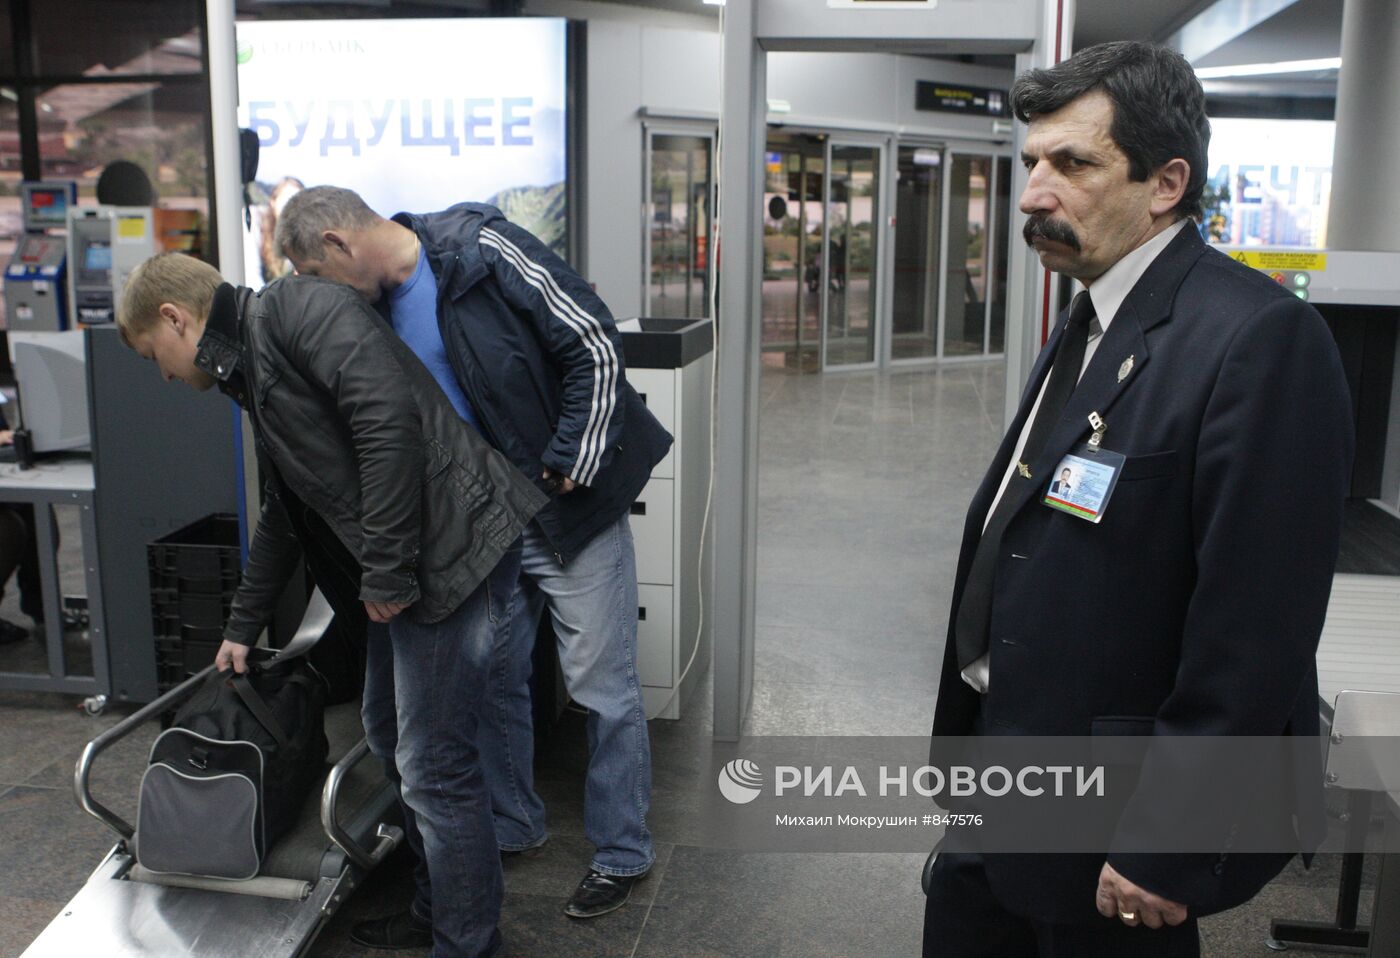 Усиление мер безопасности в аэропорту города Сочи